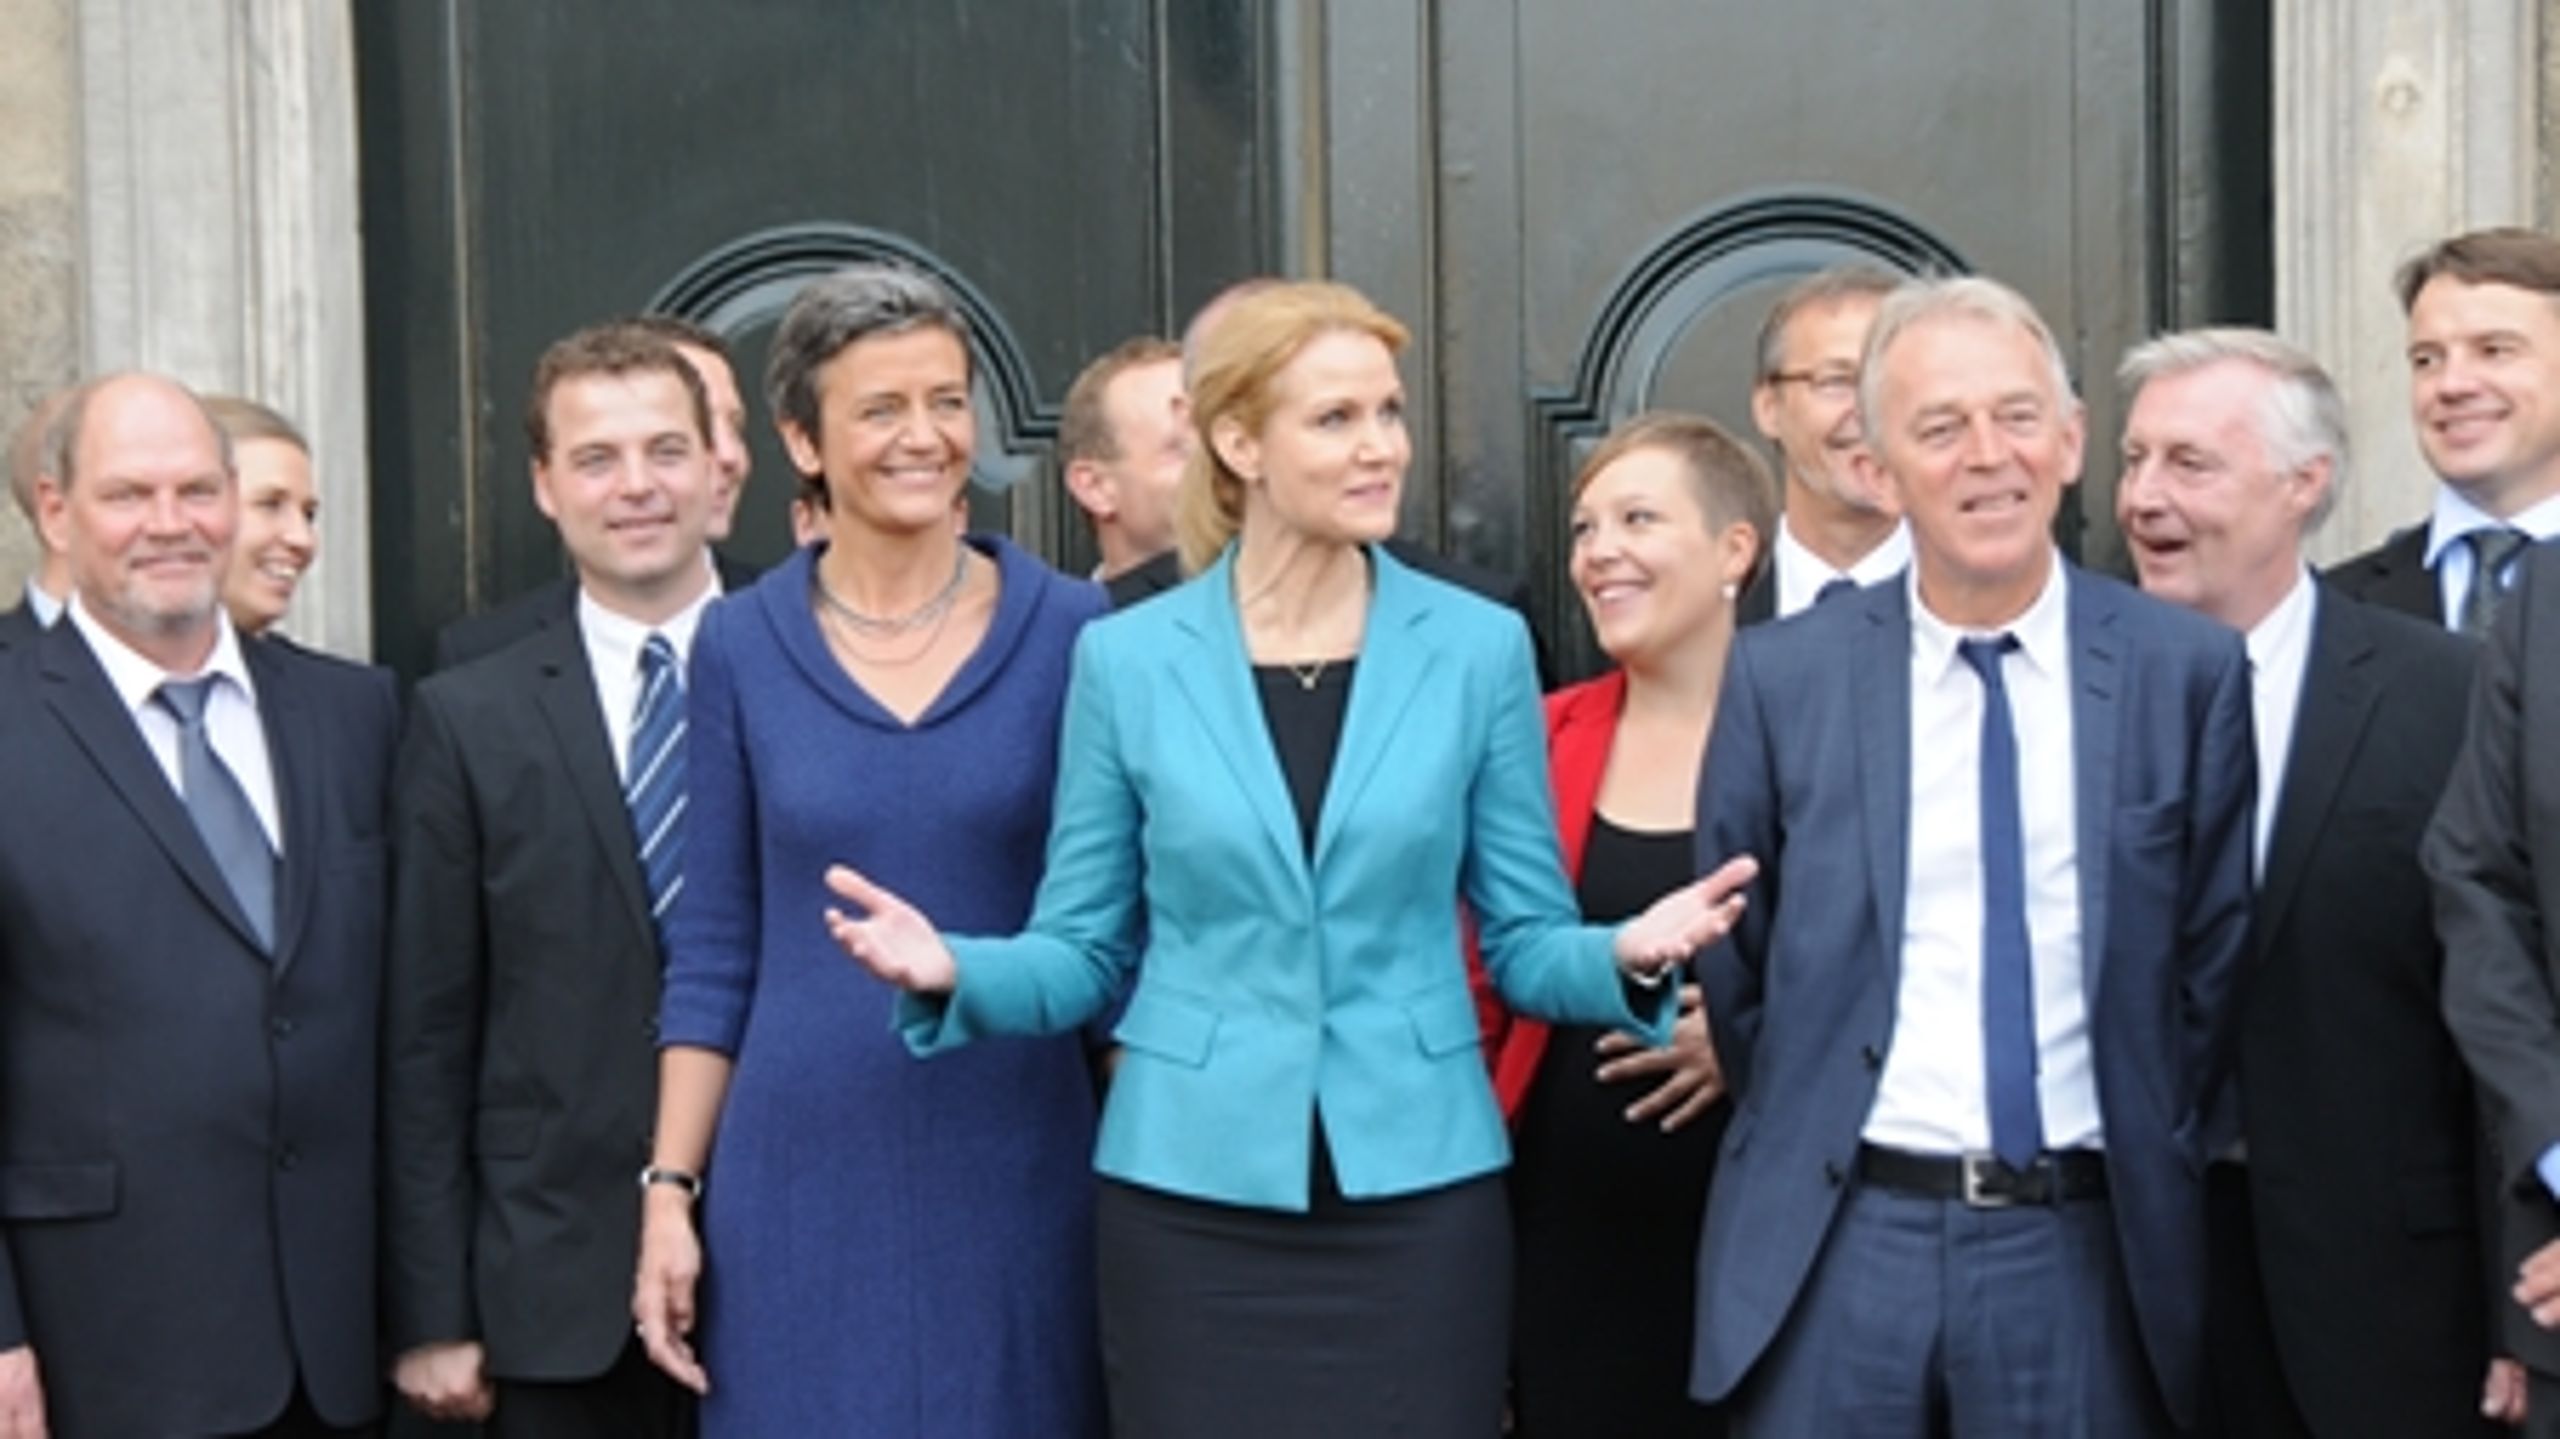 Statsminister Helle Thorning-Schmidt (S) præsenterer sit første ministerhold foran Amalienborg i 2011. I dag har hun præsenteret et nyt hold.